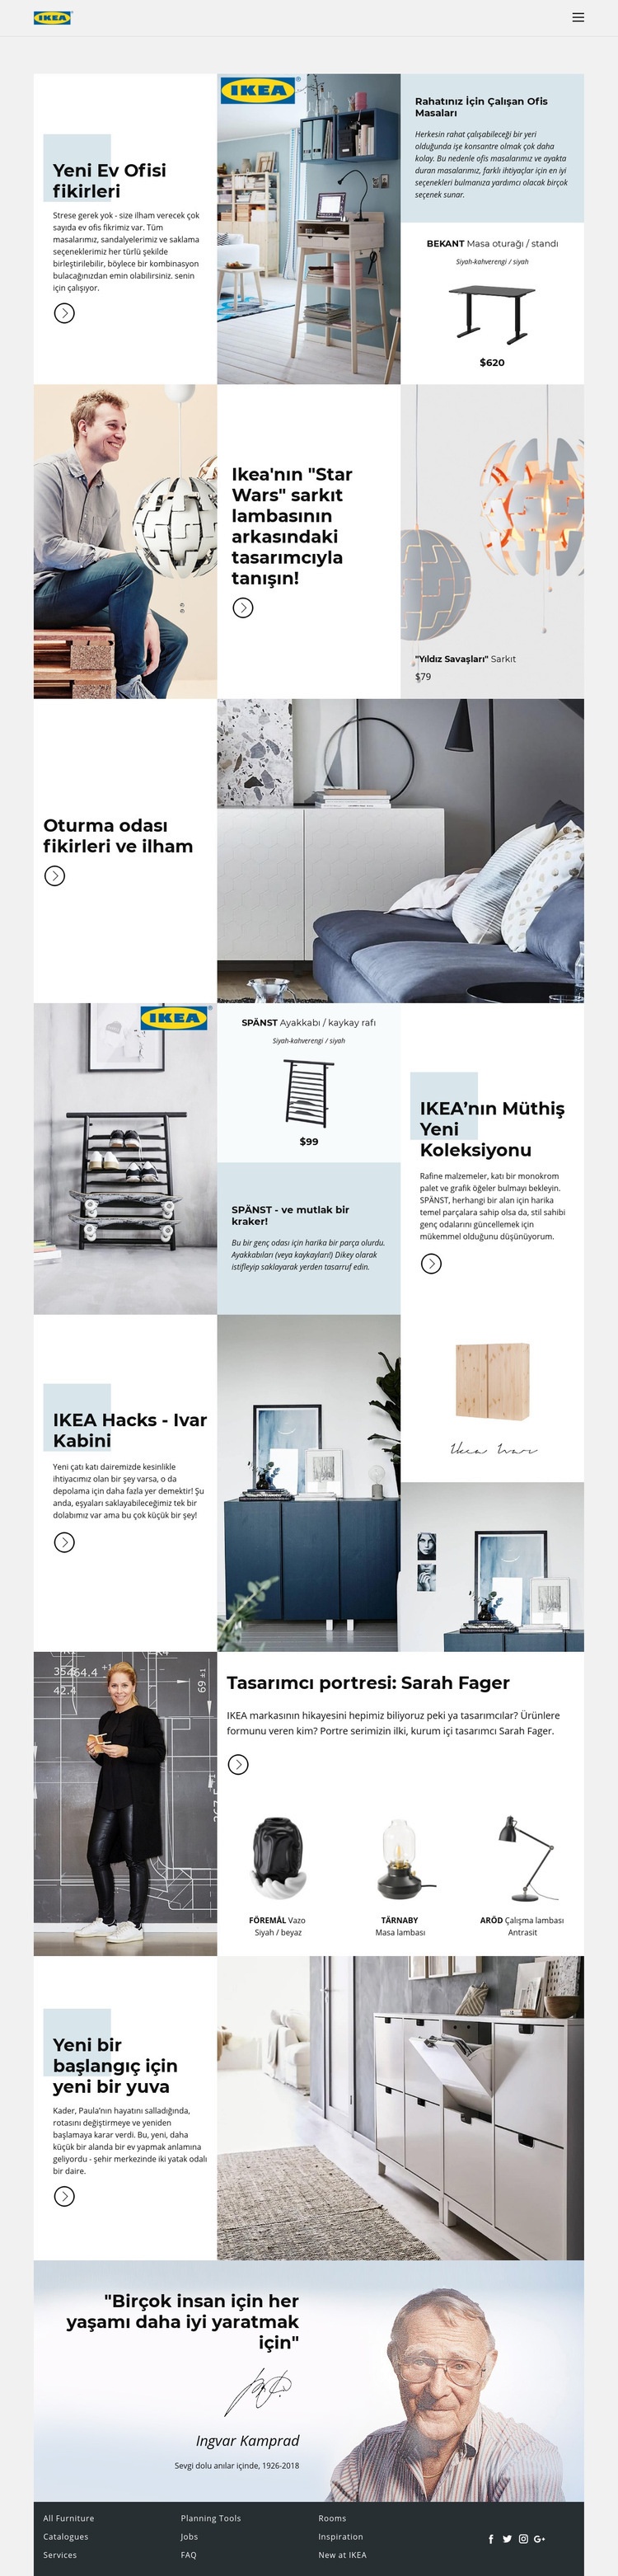 IKEA'dan İlham Web sitesi tasarımı